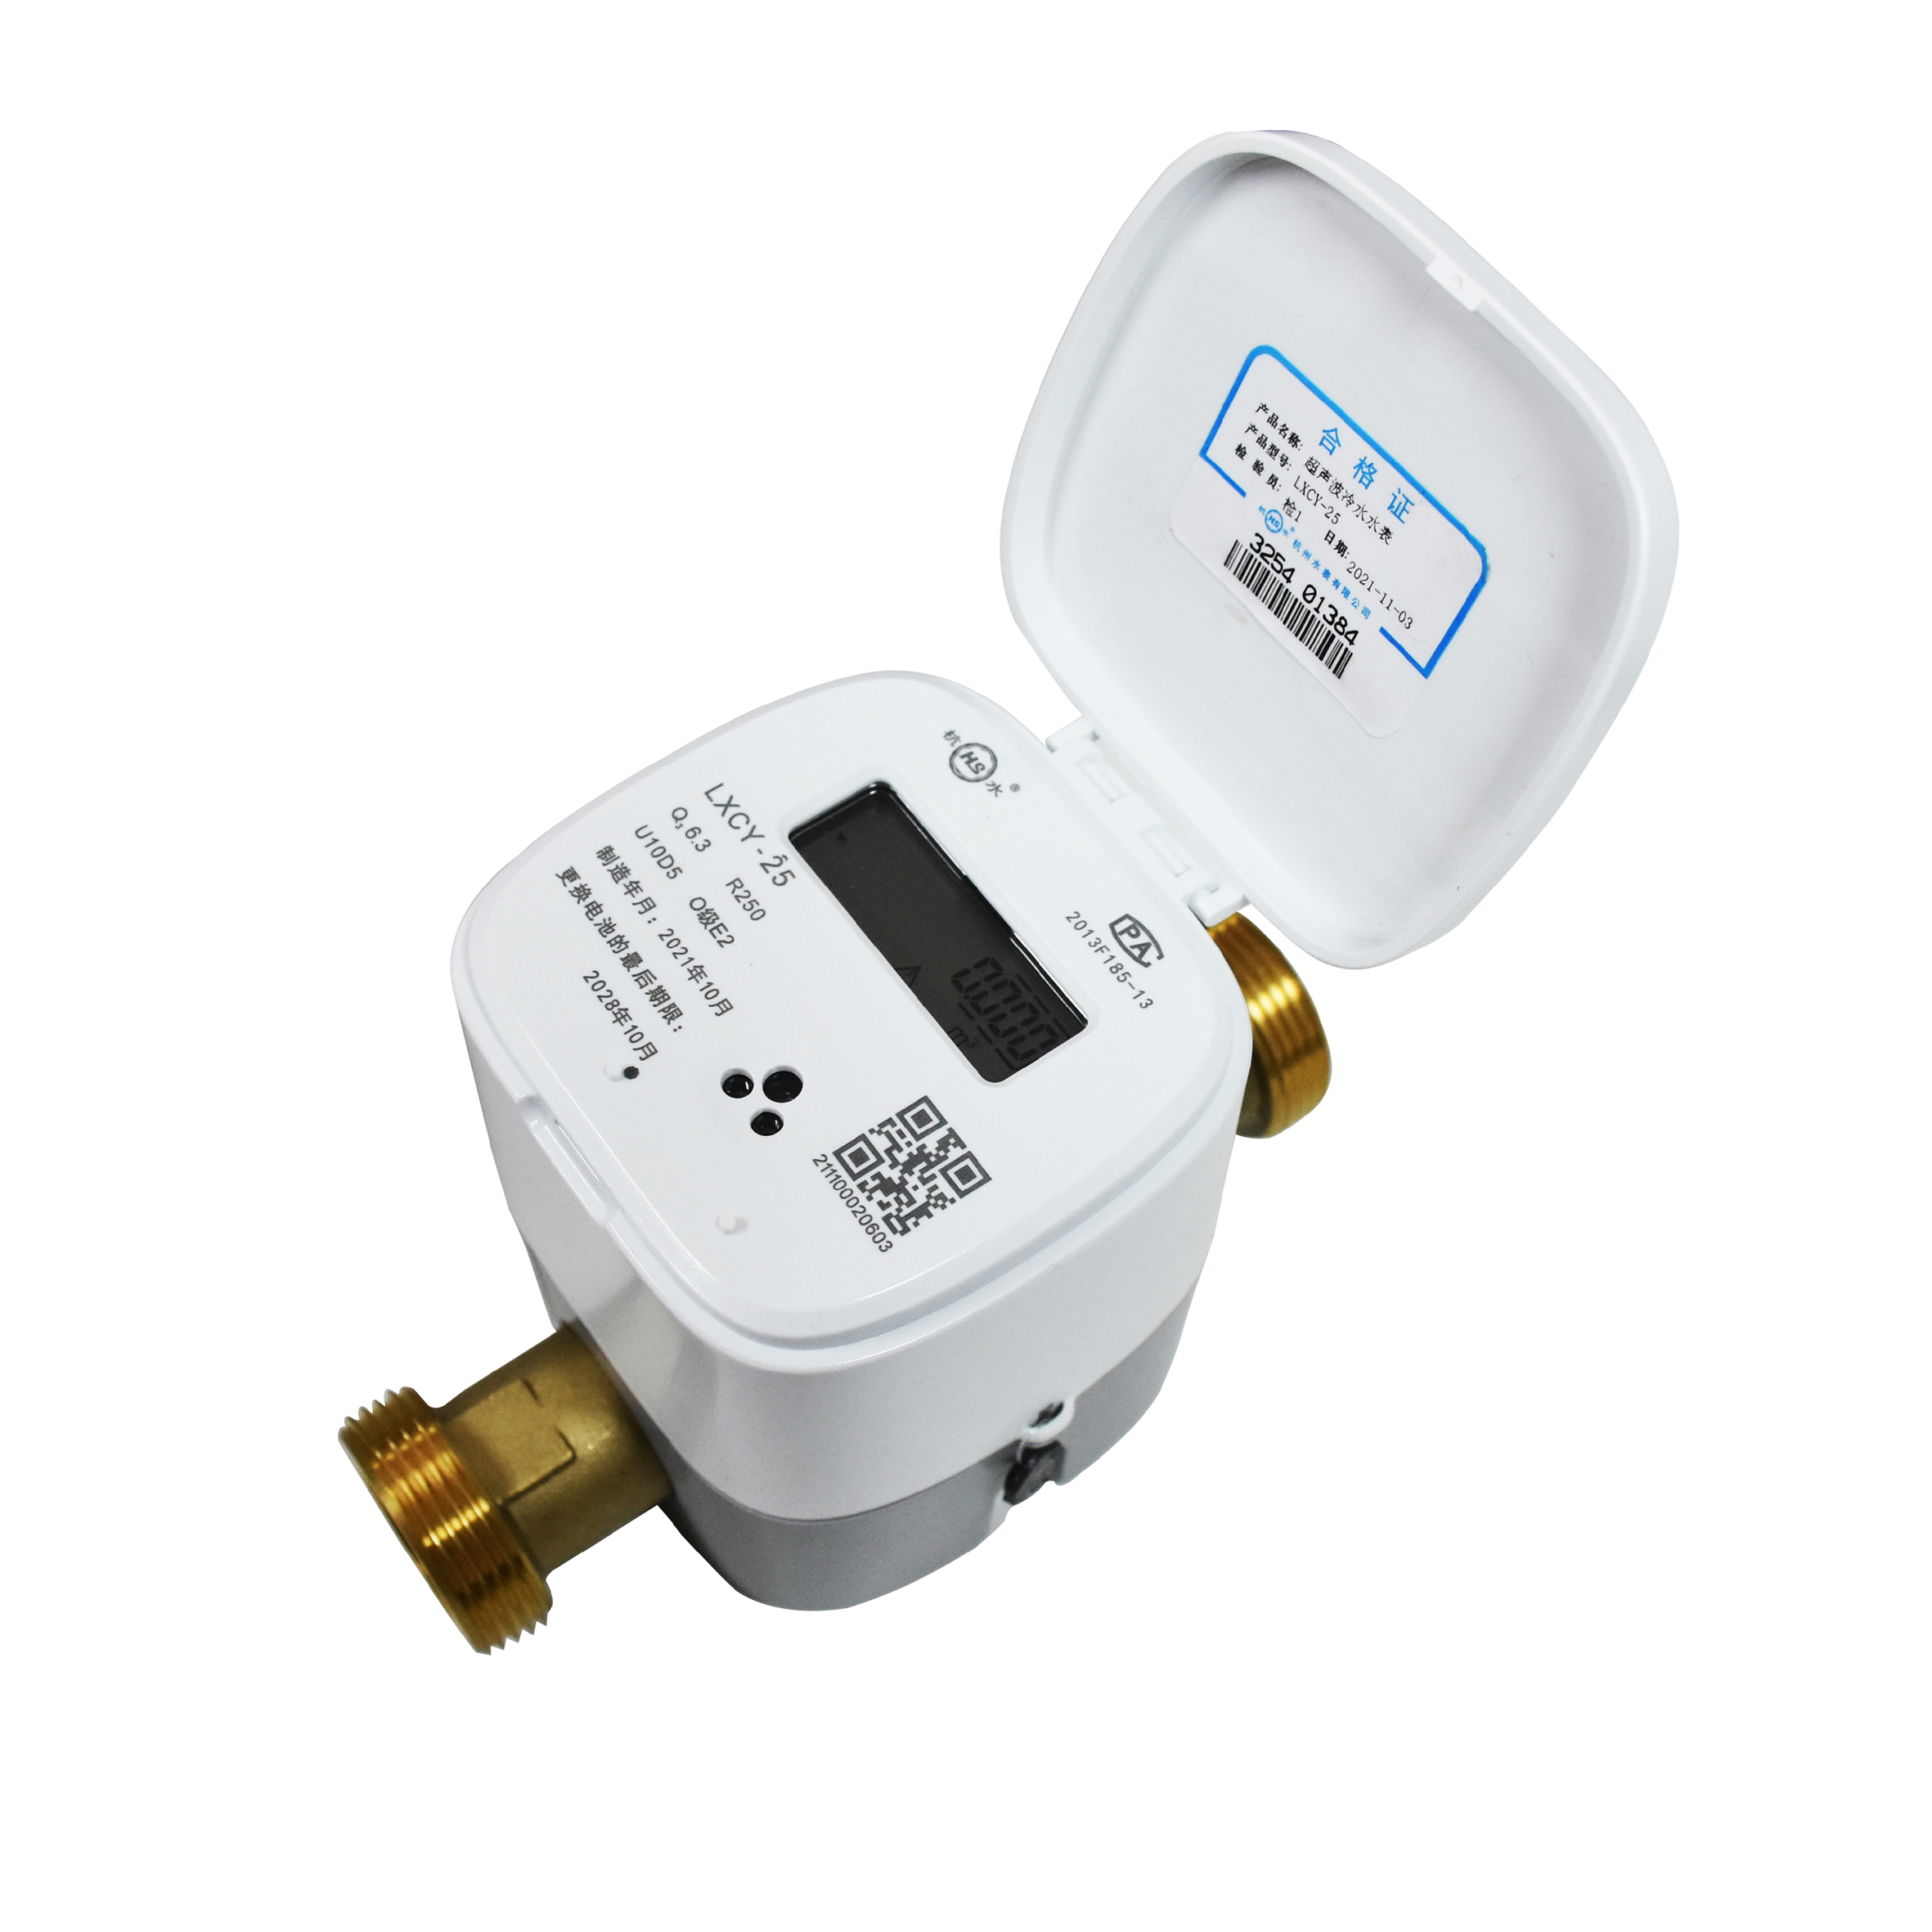 Ultrasonic remote water meter (DN15-25)